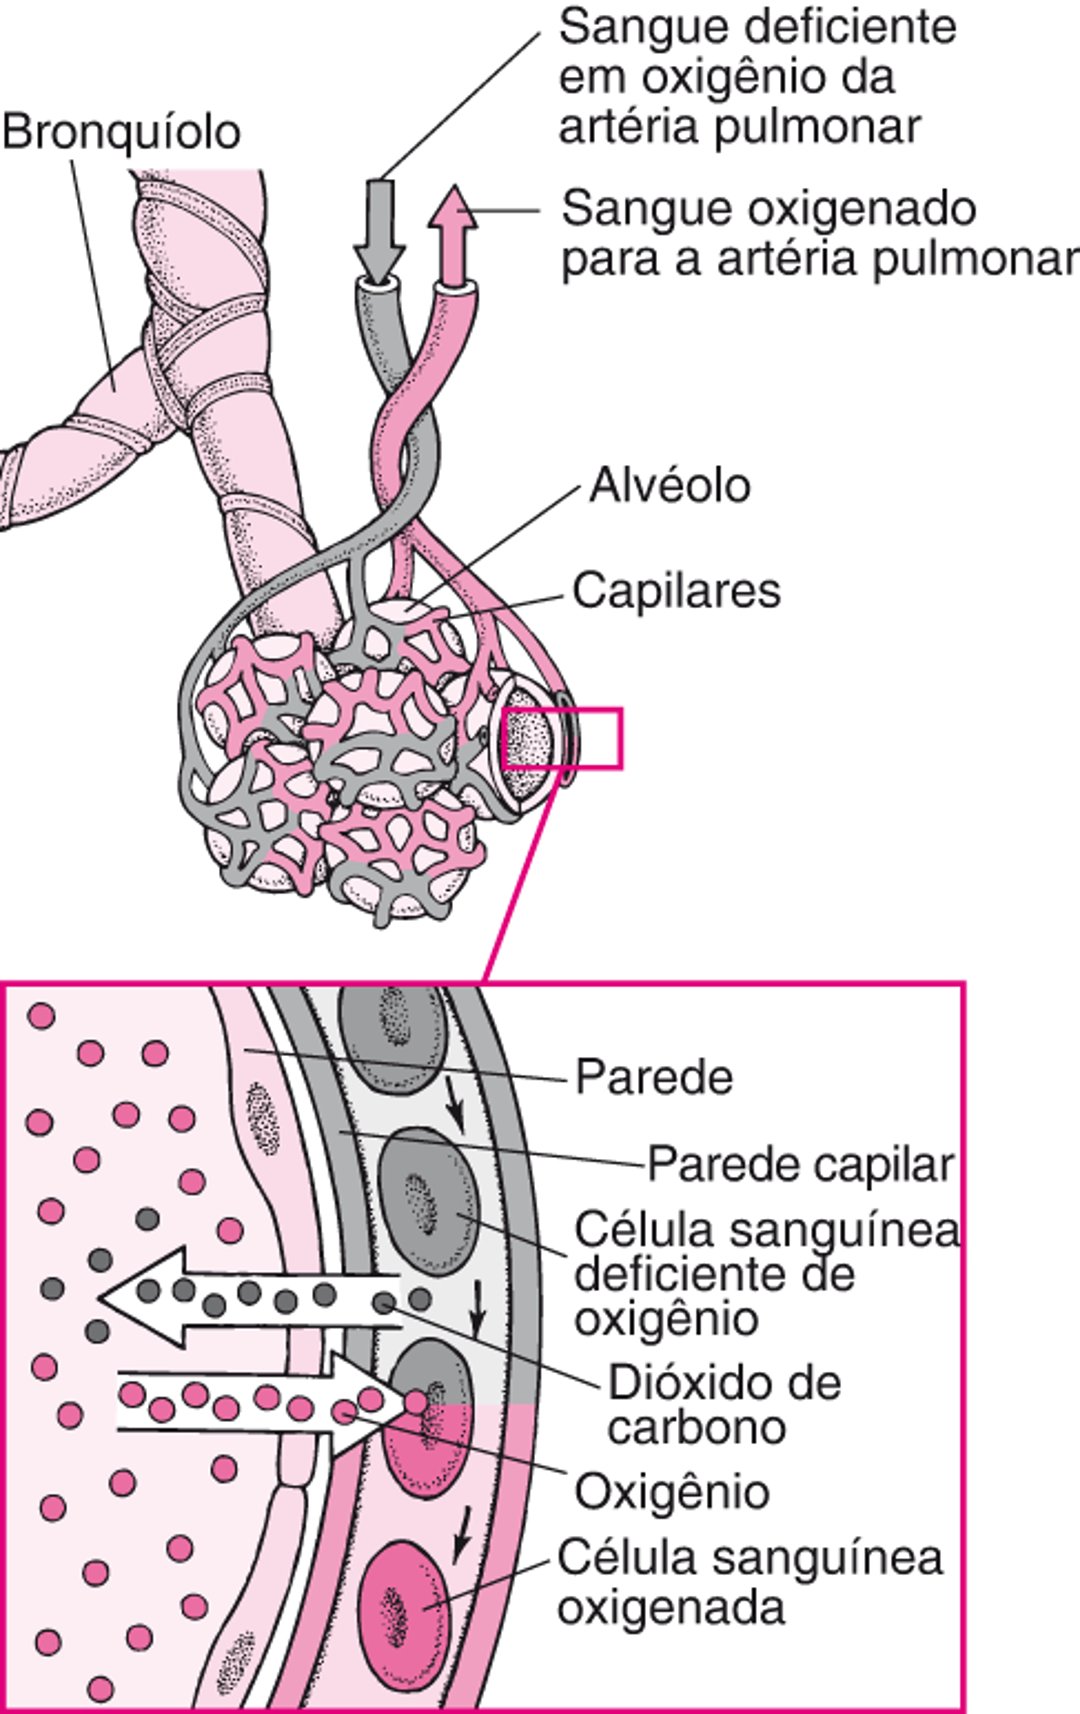 Troca gasosa entre os espaços alveolares e os vasos capilares